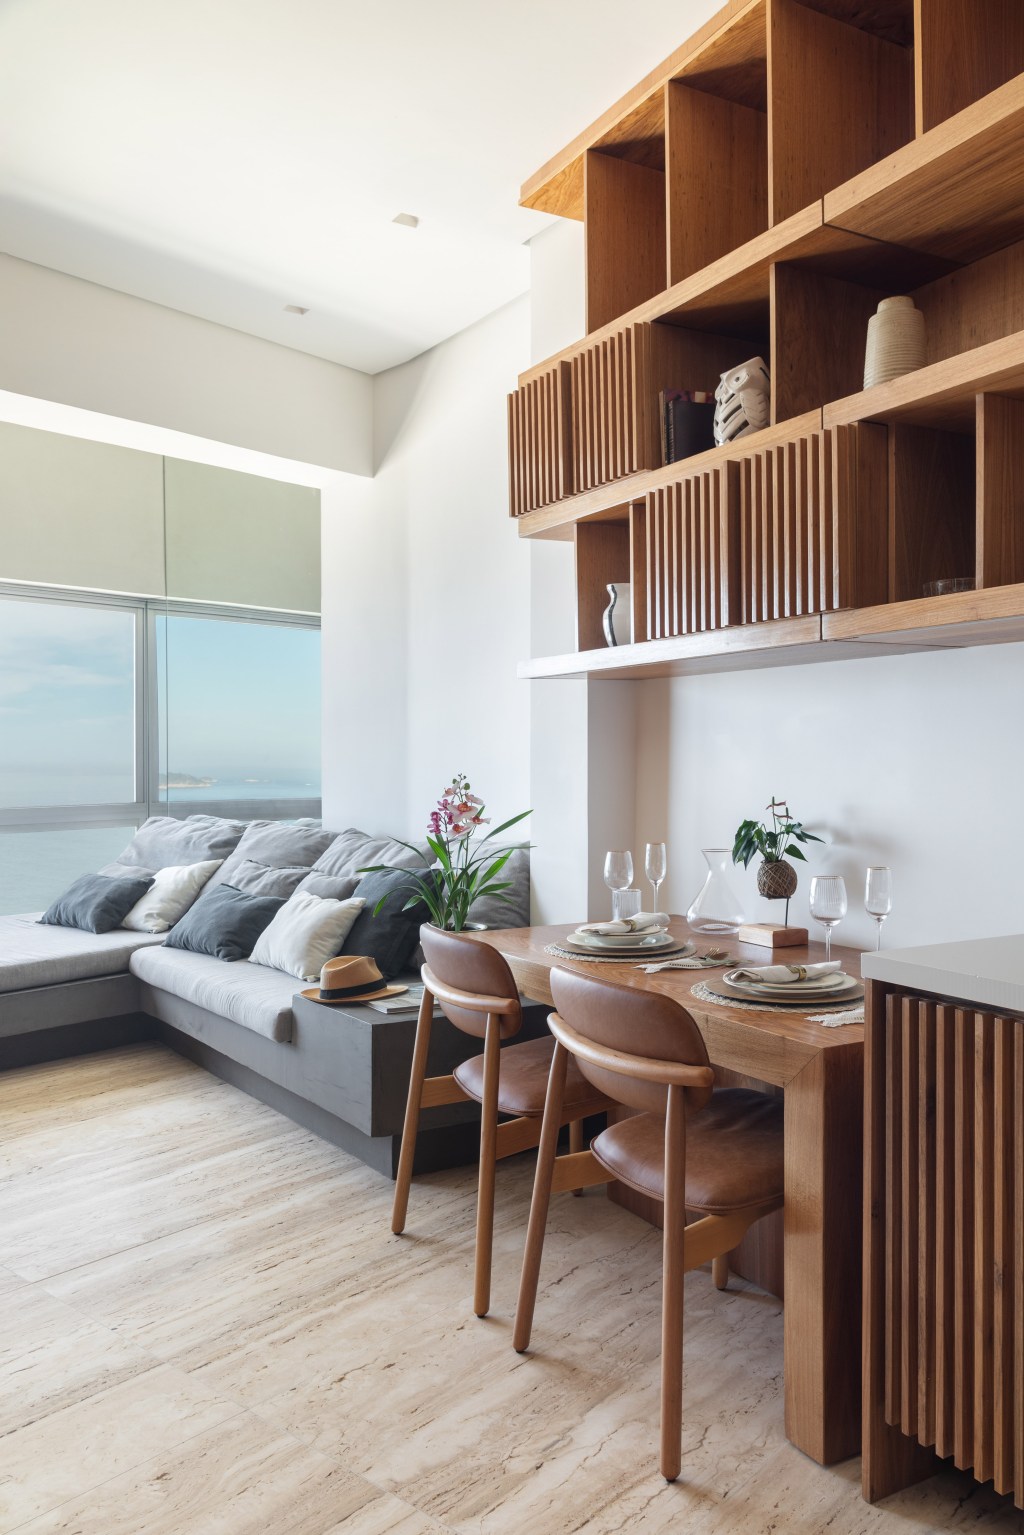 Apê com 48 m² recebe decoração contemporânea, minimalista e atemporal. Projeto do Rodrigo Cardoso. Na foto, mesa para refeições ao lado de sofá